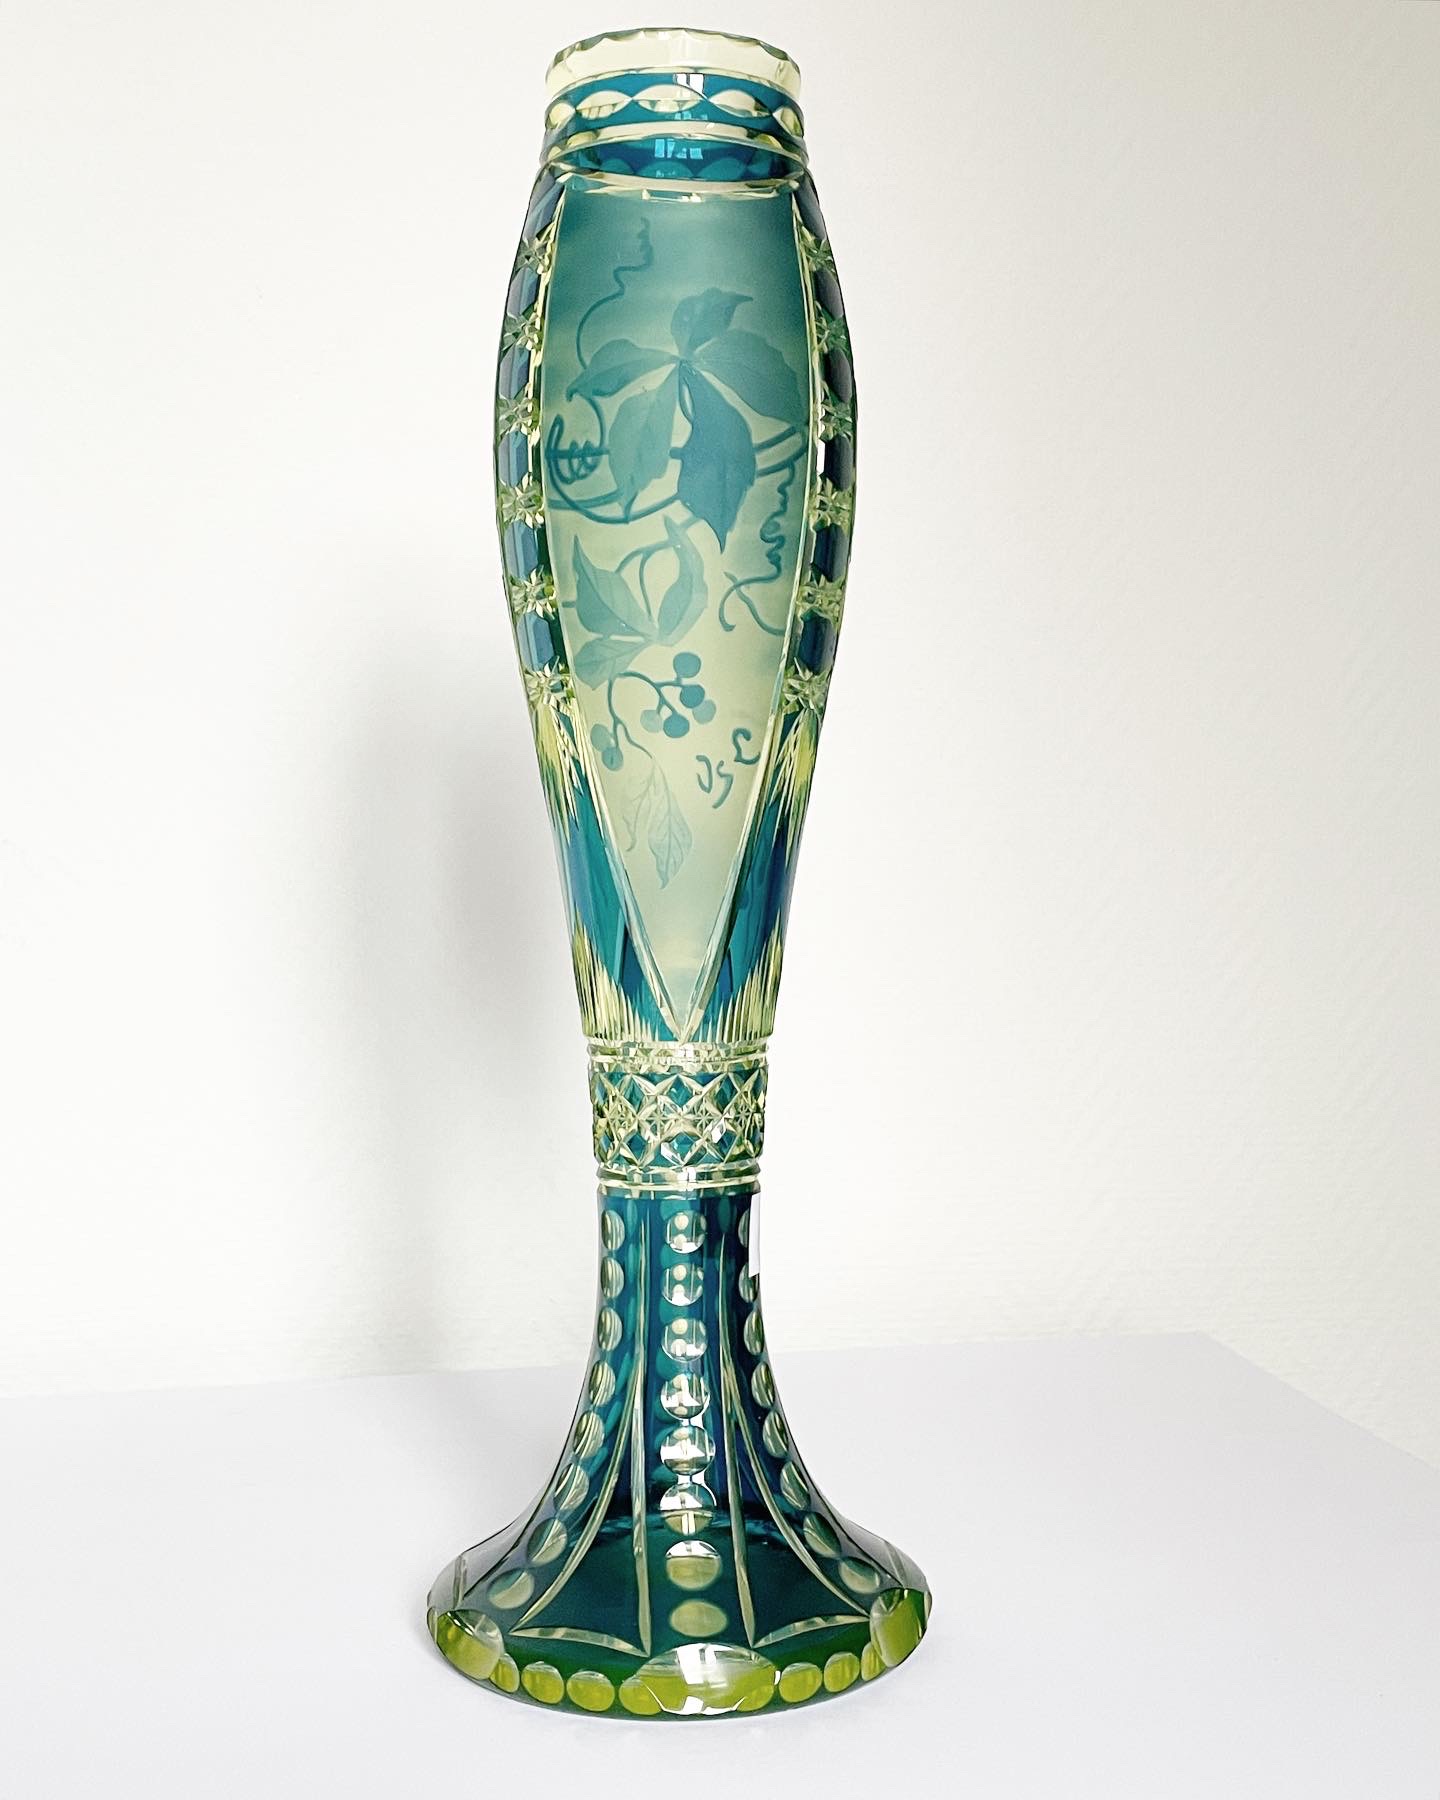 vase-jonghen-val-saint-lambert-urane-bleu-pétrole-art-nouveau-collection-cristal-léon-ledru-dégagé-acide-aurore-morisse-antiquaire-marchand-art-liège-paris7